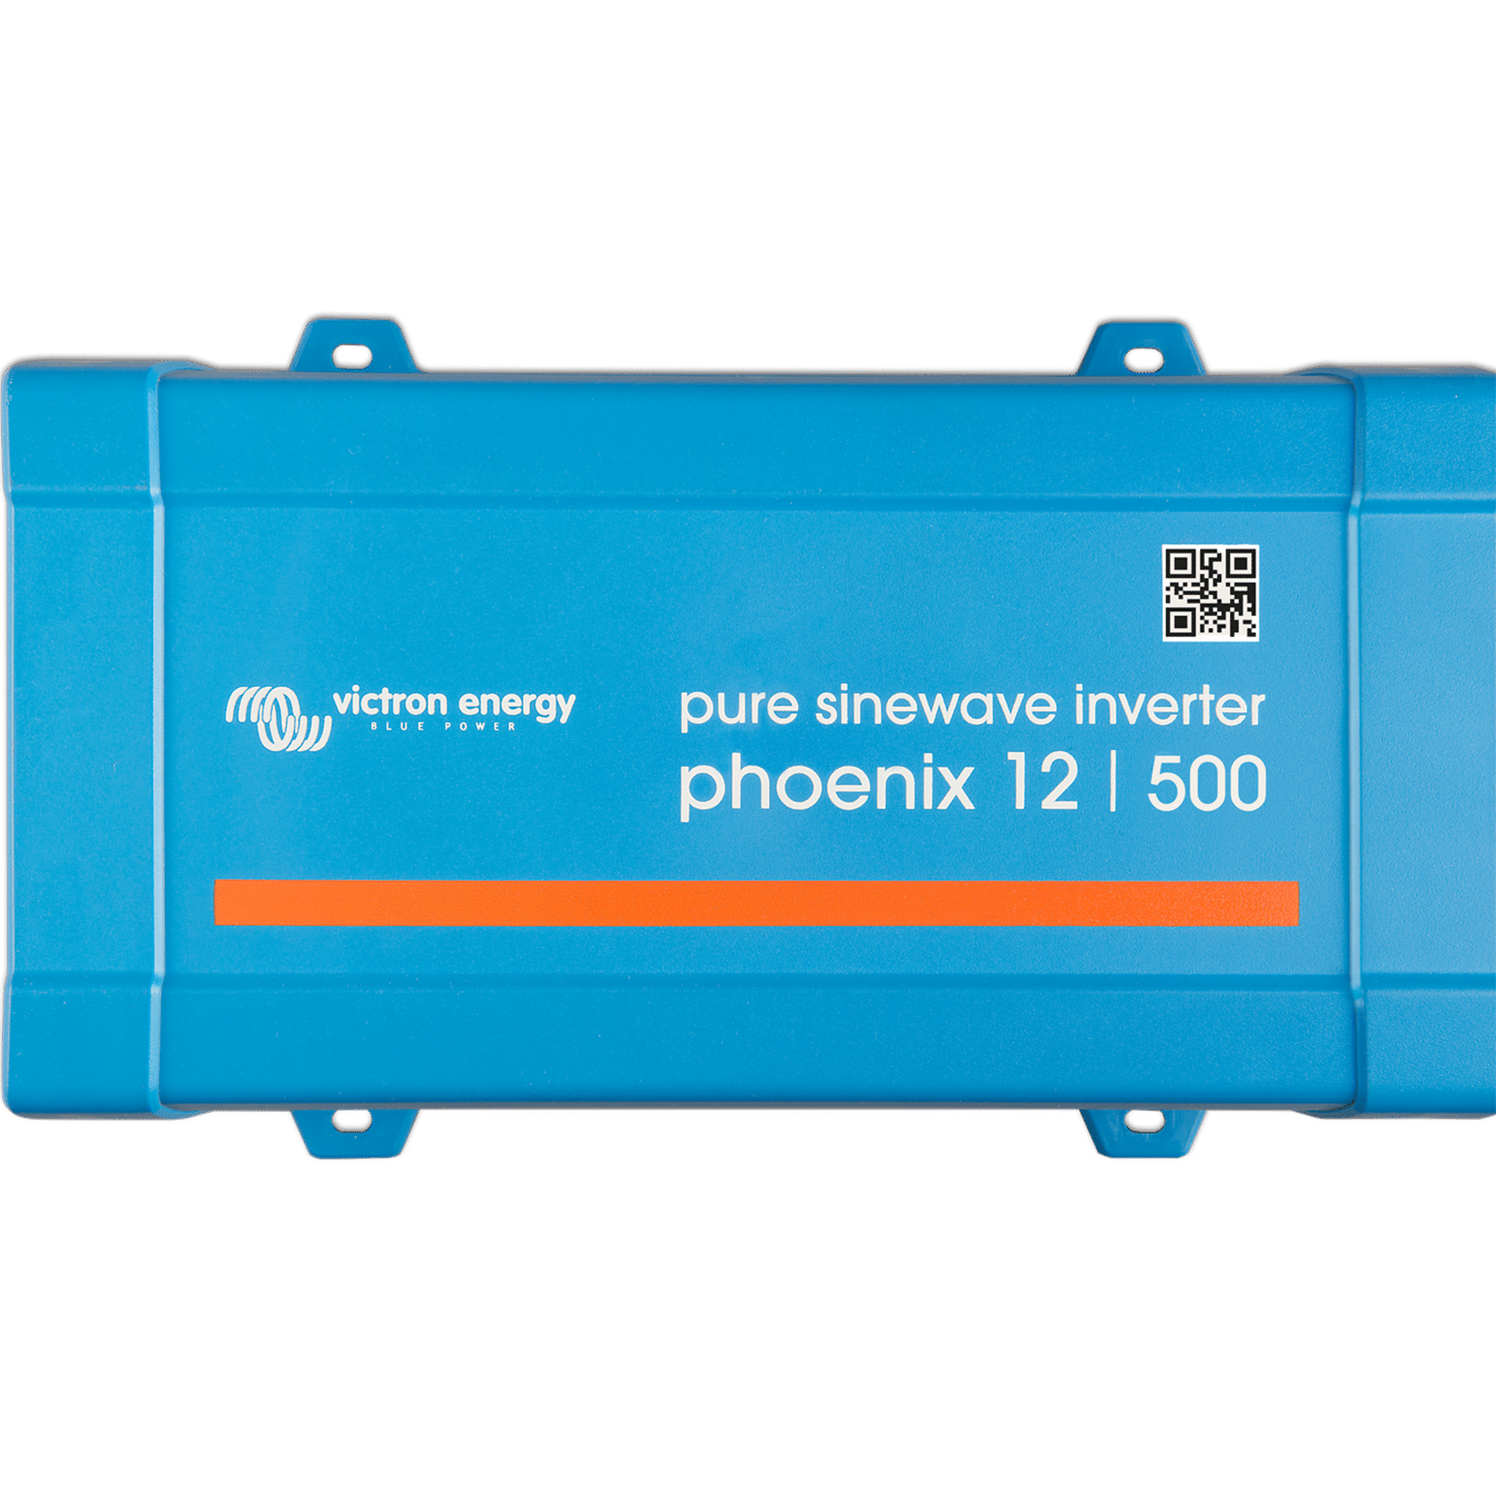 Phoenix 500w inverter 12V 500VA VE.Direct